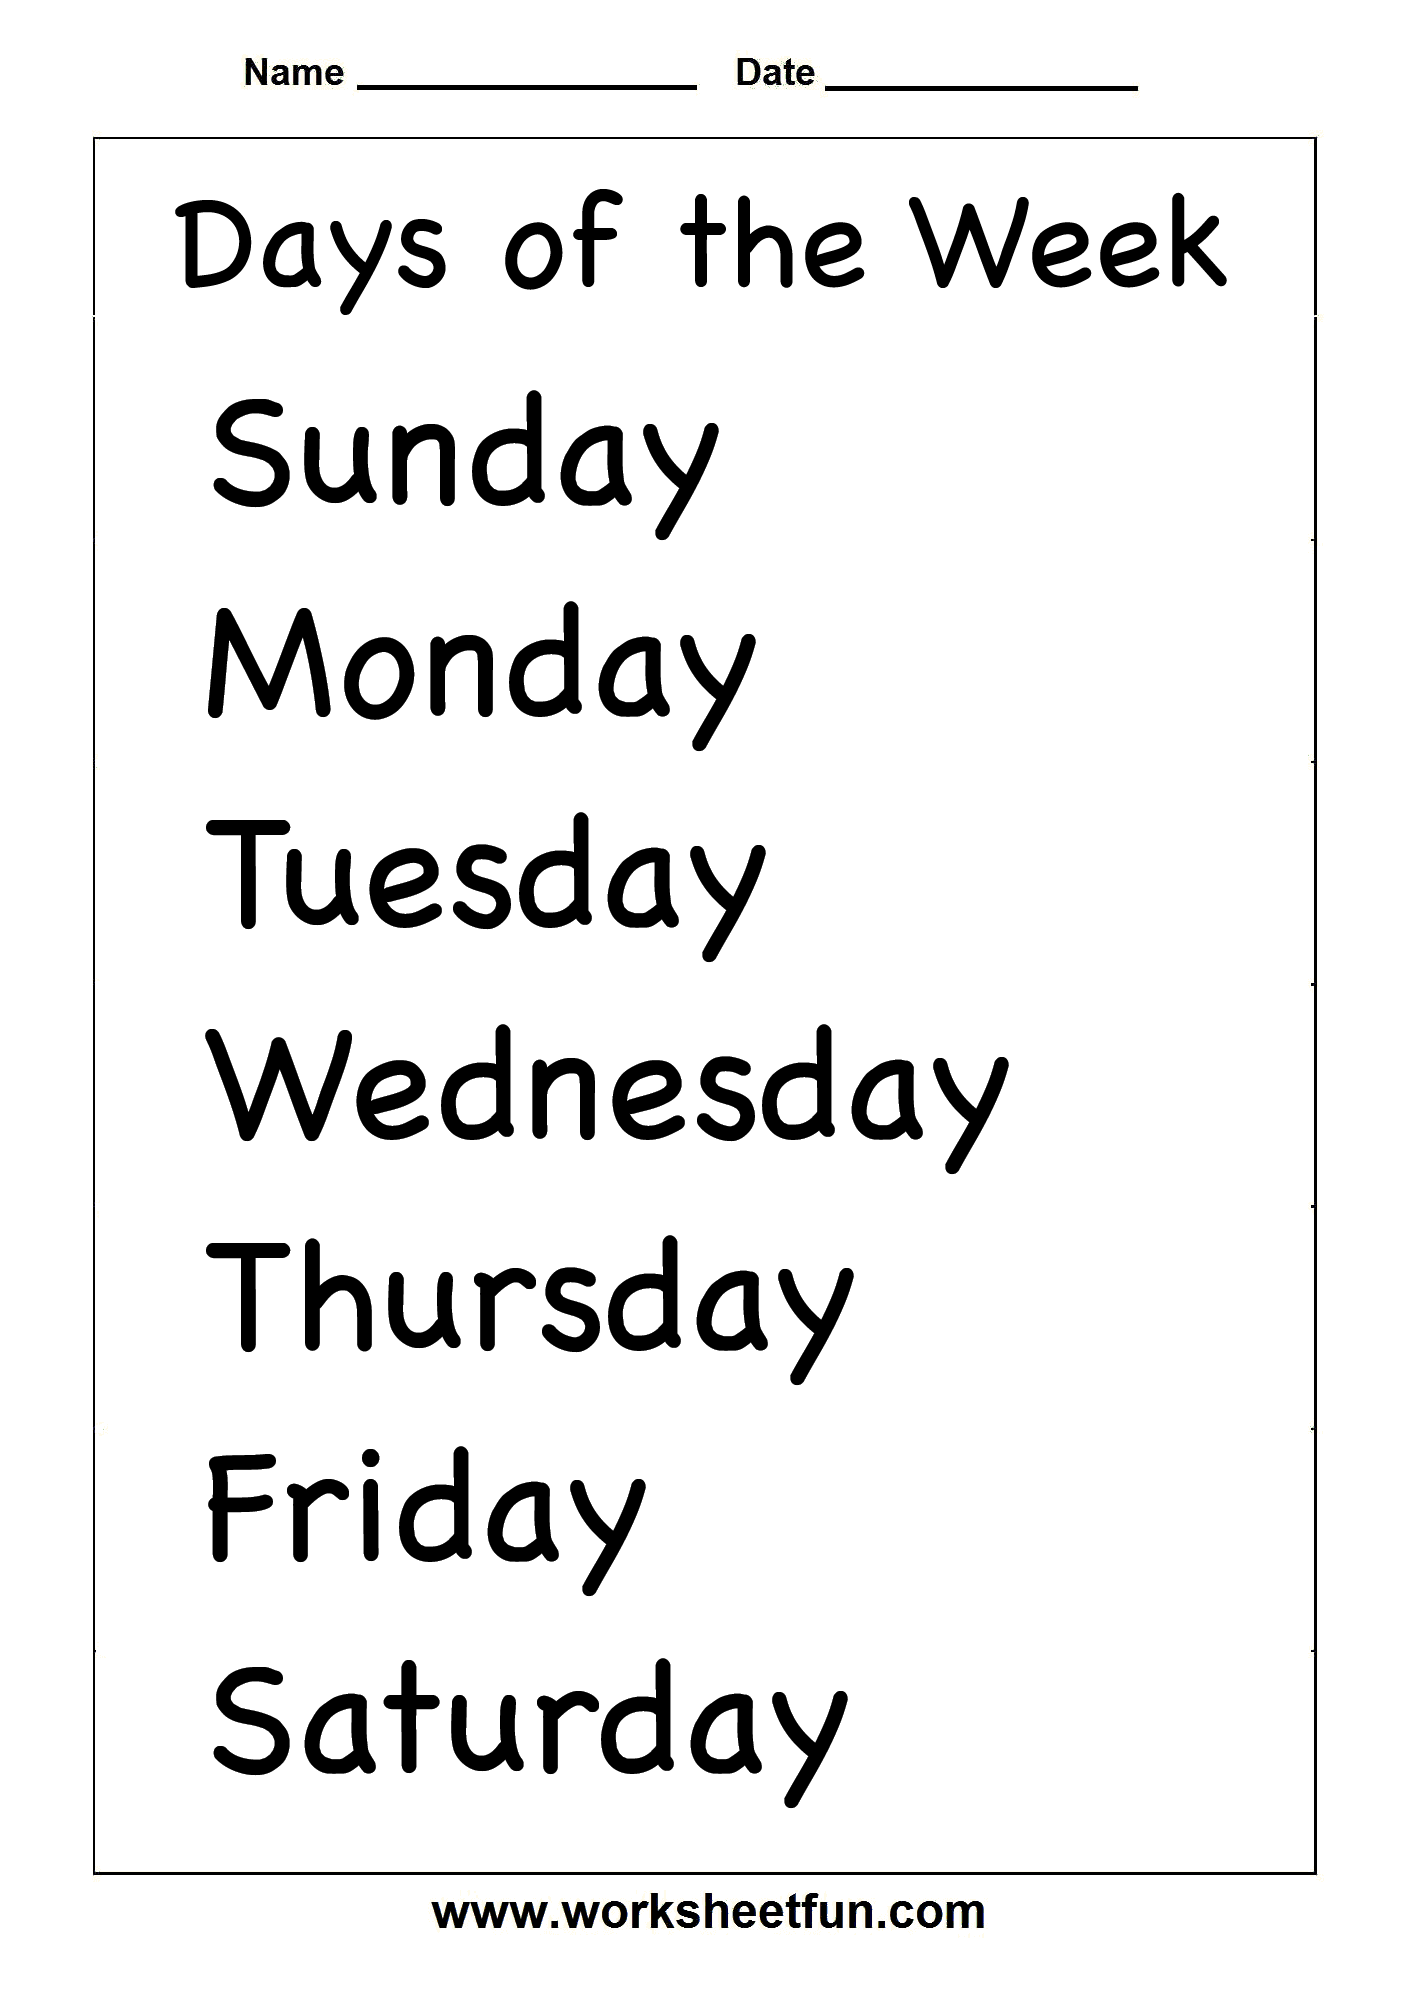  Printable Days of the Week Worksheets